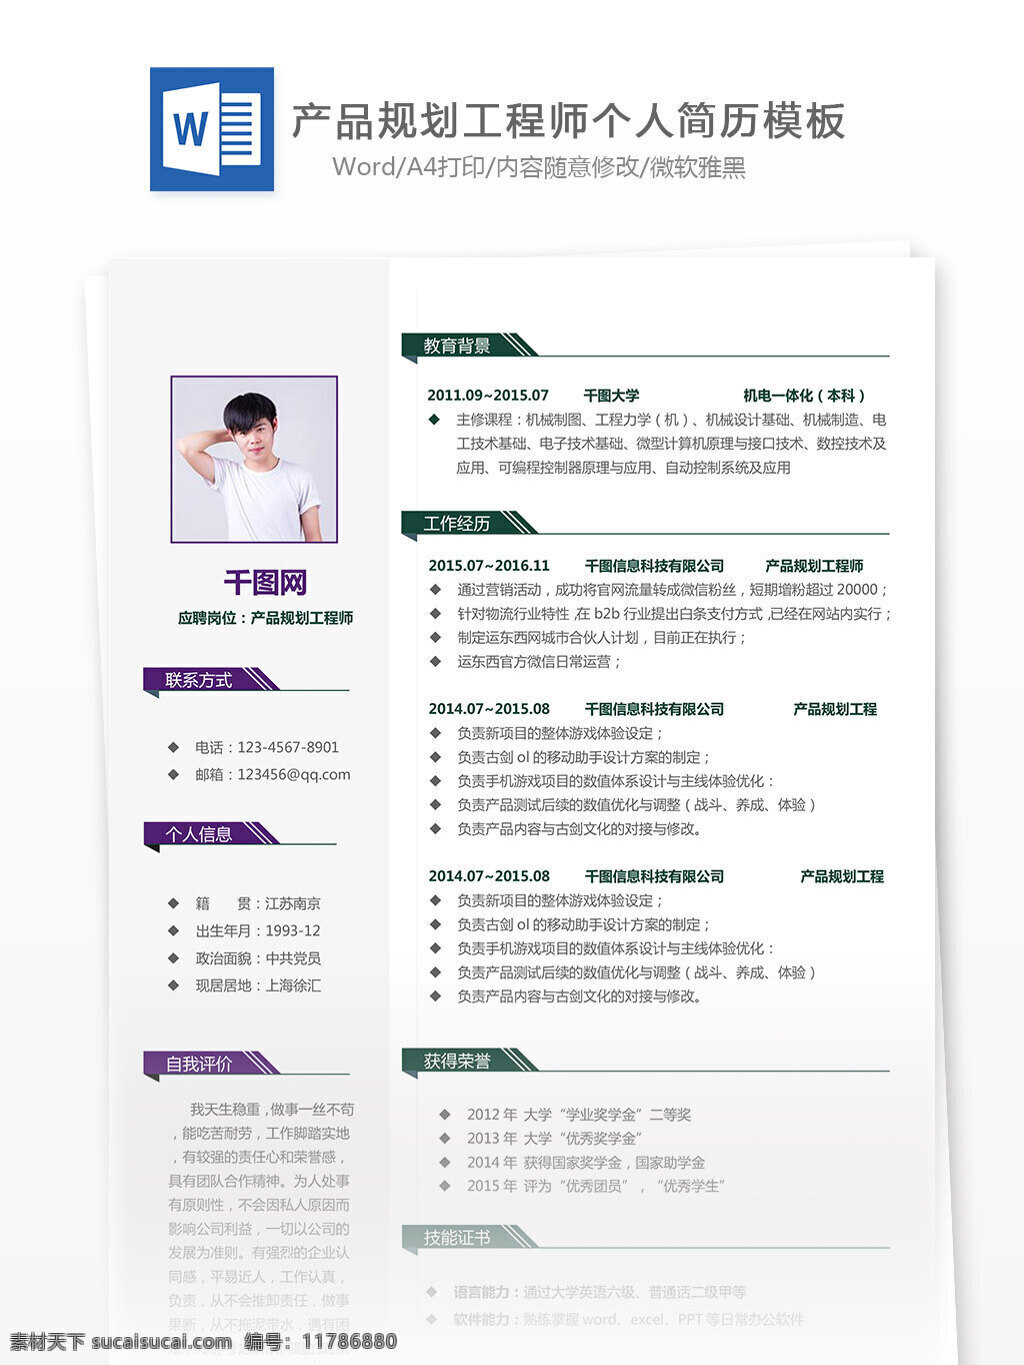 陈 泰宇 产品 规划 工程师 中文 简历 个人简历 房地产 简约 欧美 个人简历模板 简历模板 13年 实用